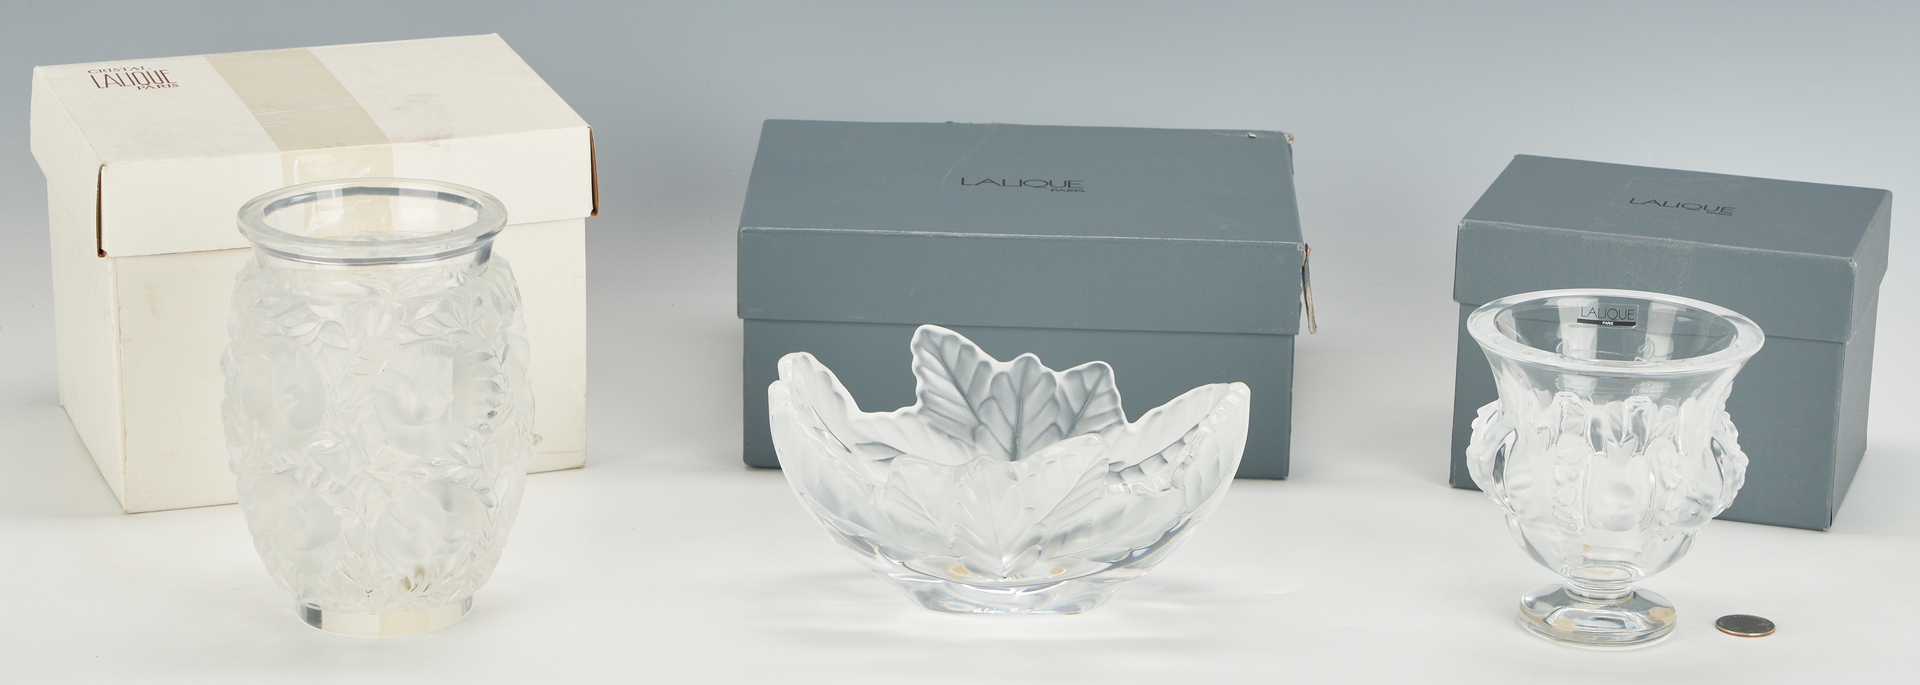 Lot 546: 2 Lalique Vases and 1 Lalique Bowl, original boxes (3 items)